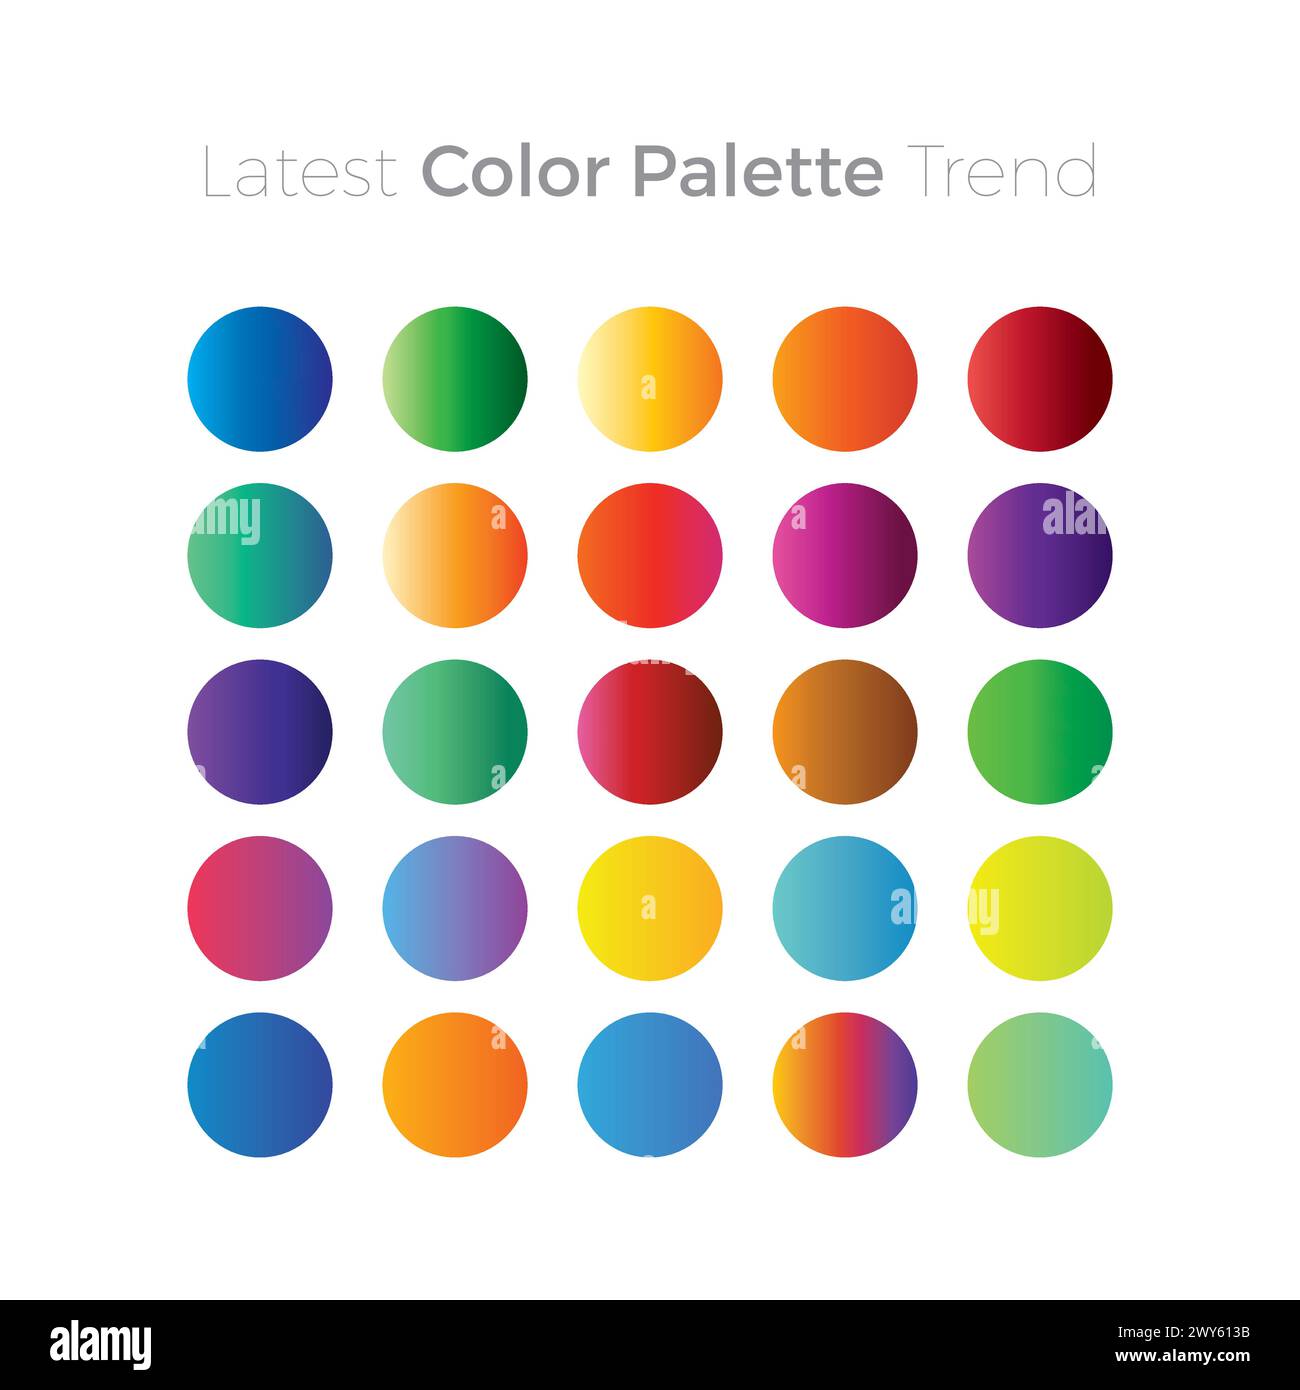 Latest Color Palette Trend. Palette Color vector Stock Vector